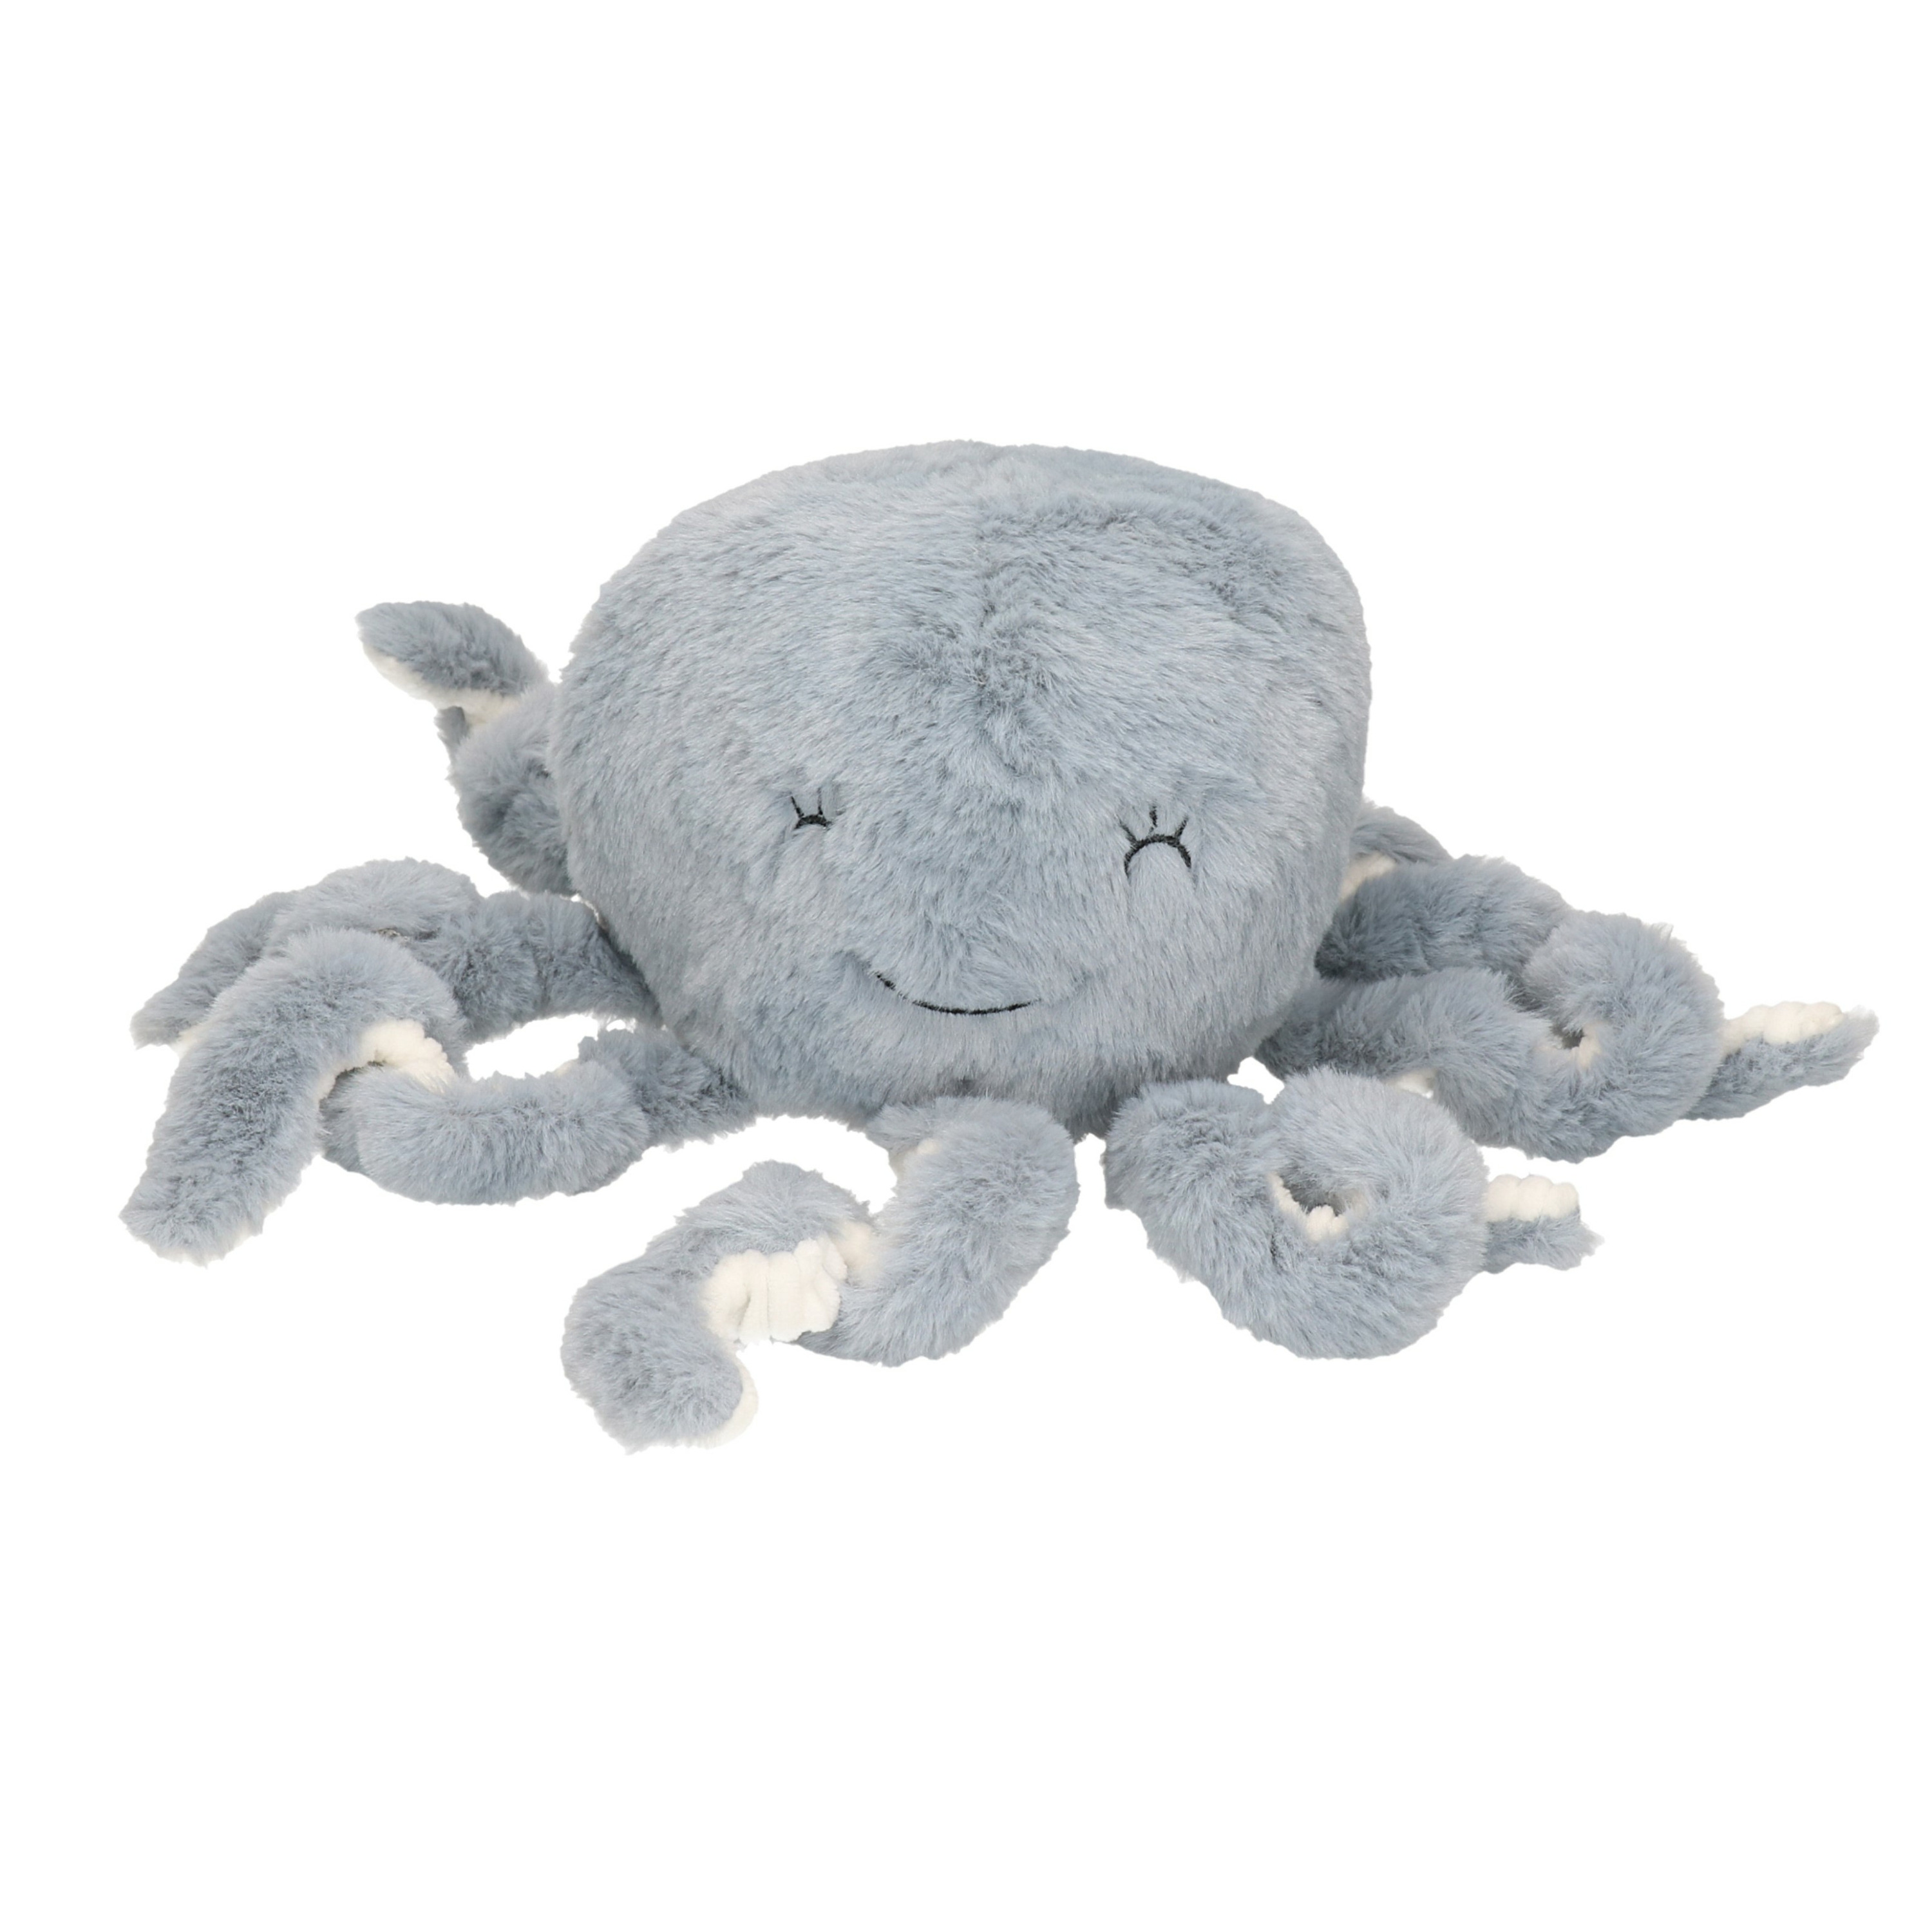 Octopus-inktvis knuffel van zachte pluche grijs-wit 22 cm